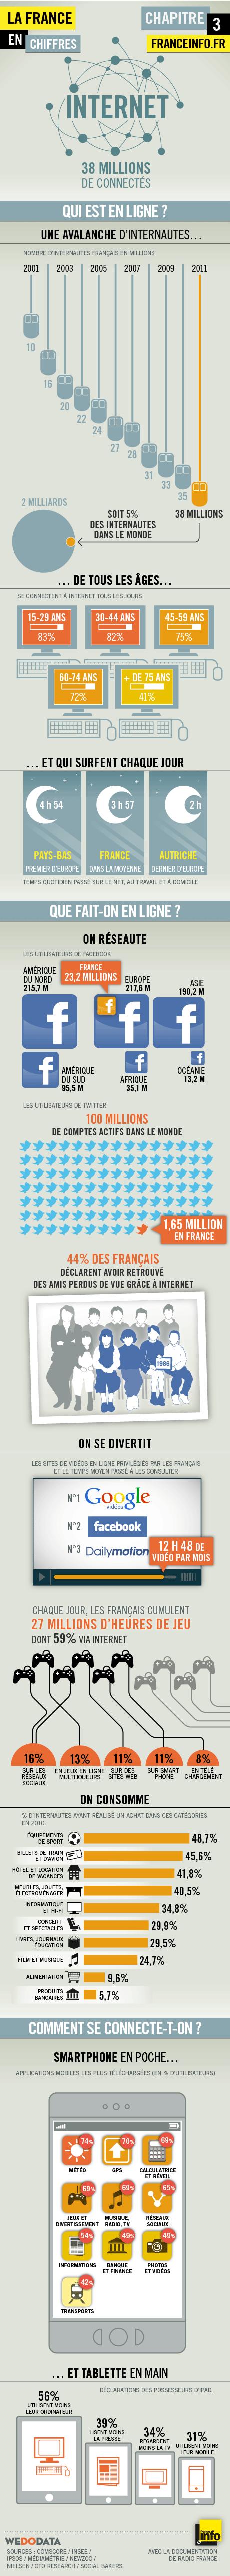 Internet en France – les derniers chiffres, les dernières tendances en 2011